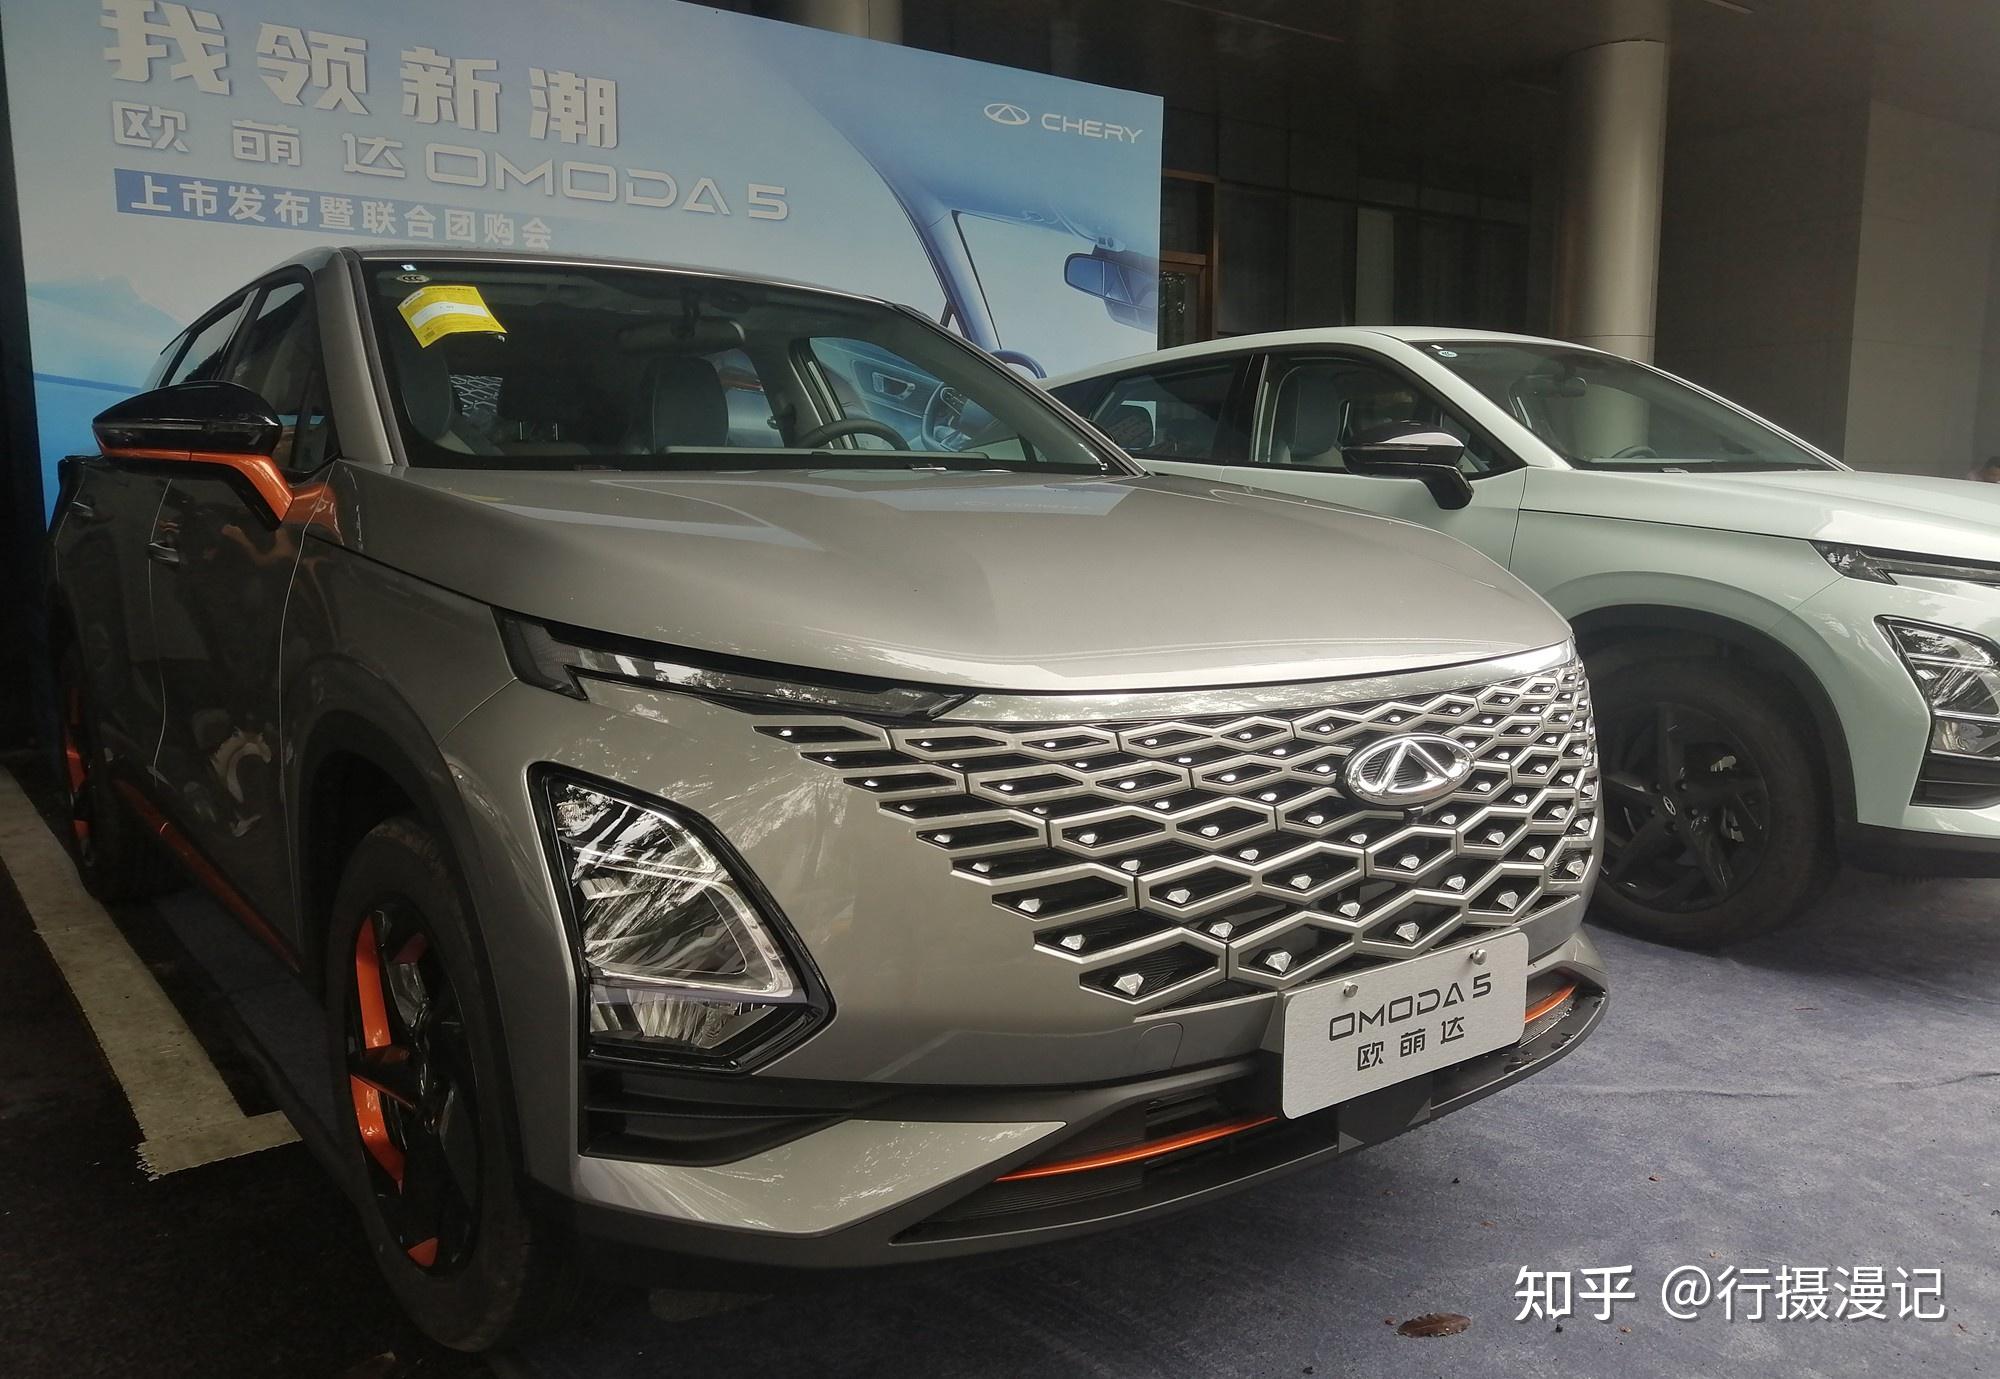 中文定名欧萌达 奇瑞OMODA 5于月底开启预售 - 国内 - 汽车信息网